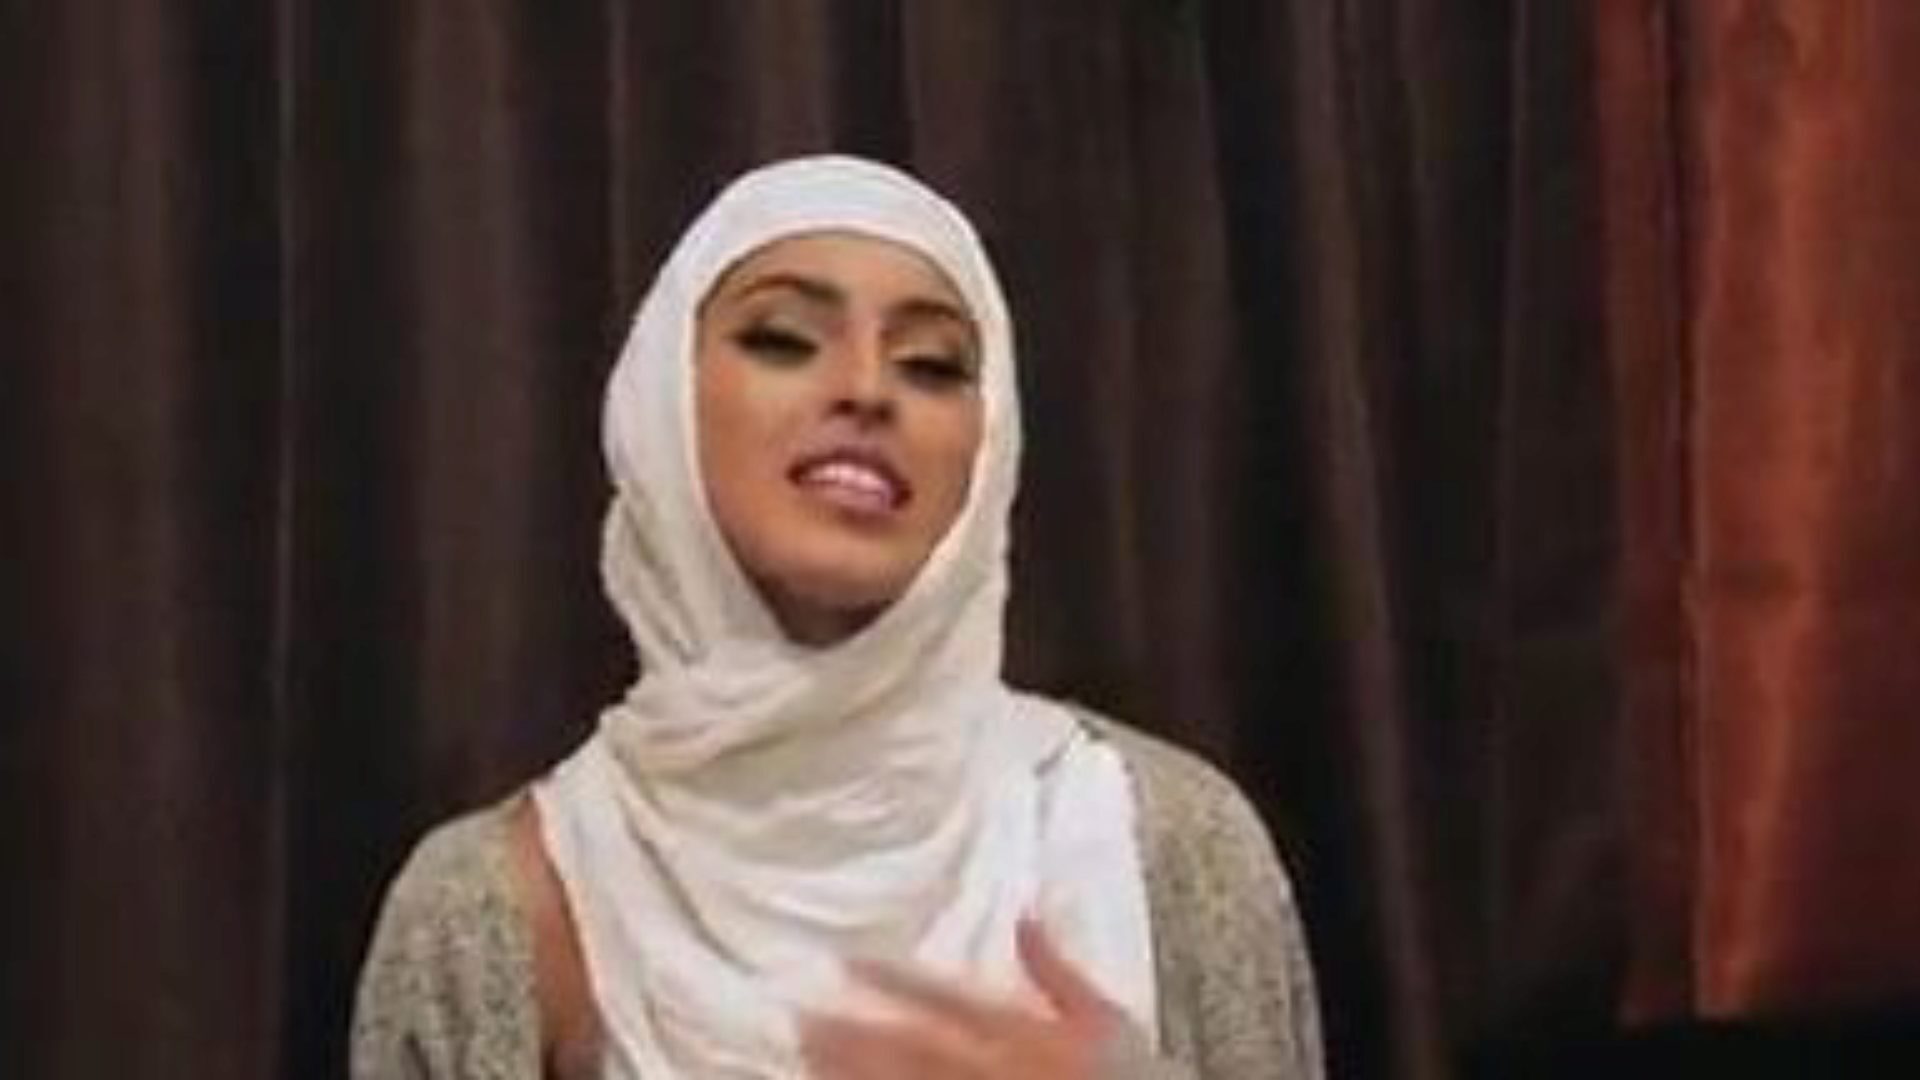 blyg oerfarna tjejer knullar i sina hijabs: gratis porr 5e titta på blyga oerfarna tjejer knullar i deras hijabs avsnitt på xhamster - det ultimata arkivet med gratis xnxx gratis & bel ami hardcore porn tube vids